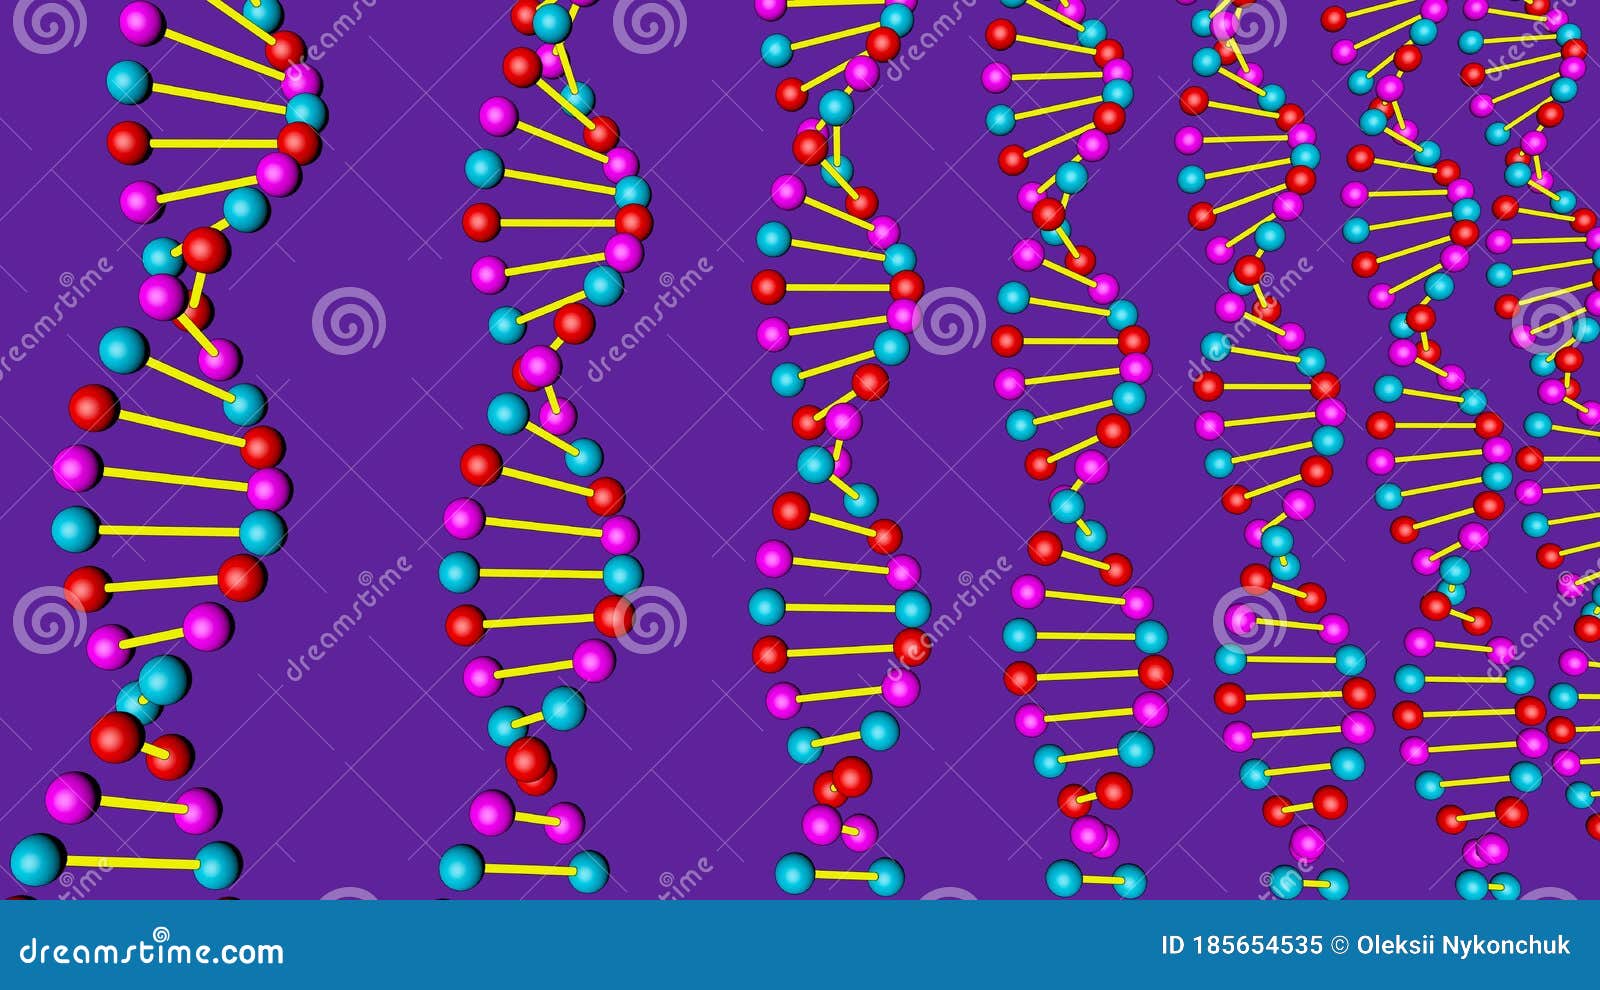 Representar El Modelo De Adn 3d En Un Fondo Púrpura Stock de ilustración -  Ilustración de molecular, salud: 185654535